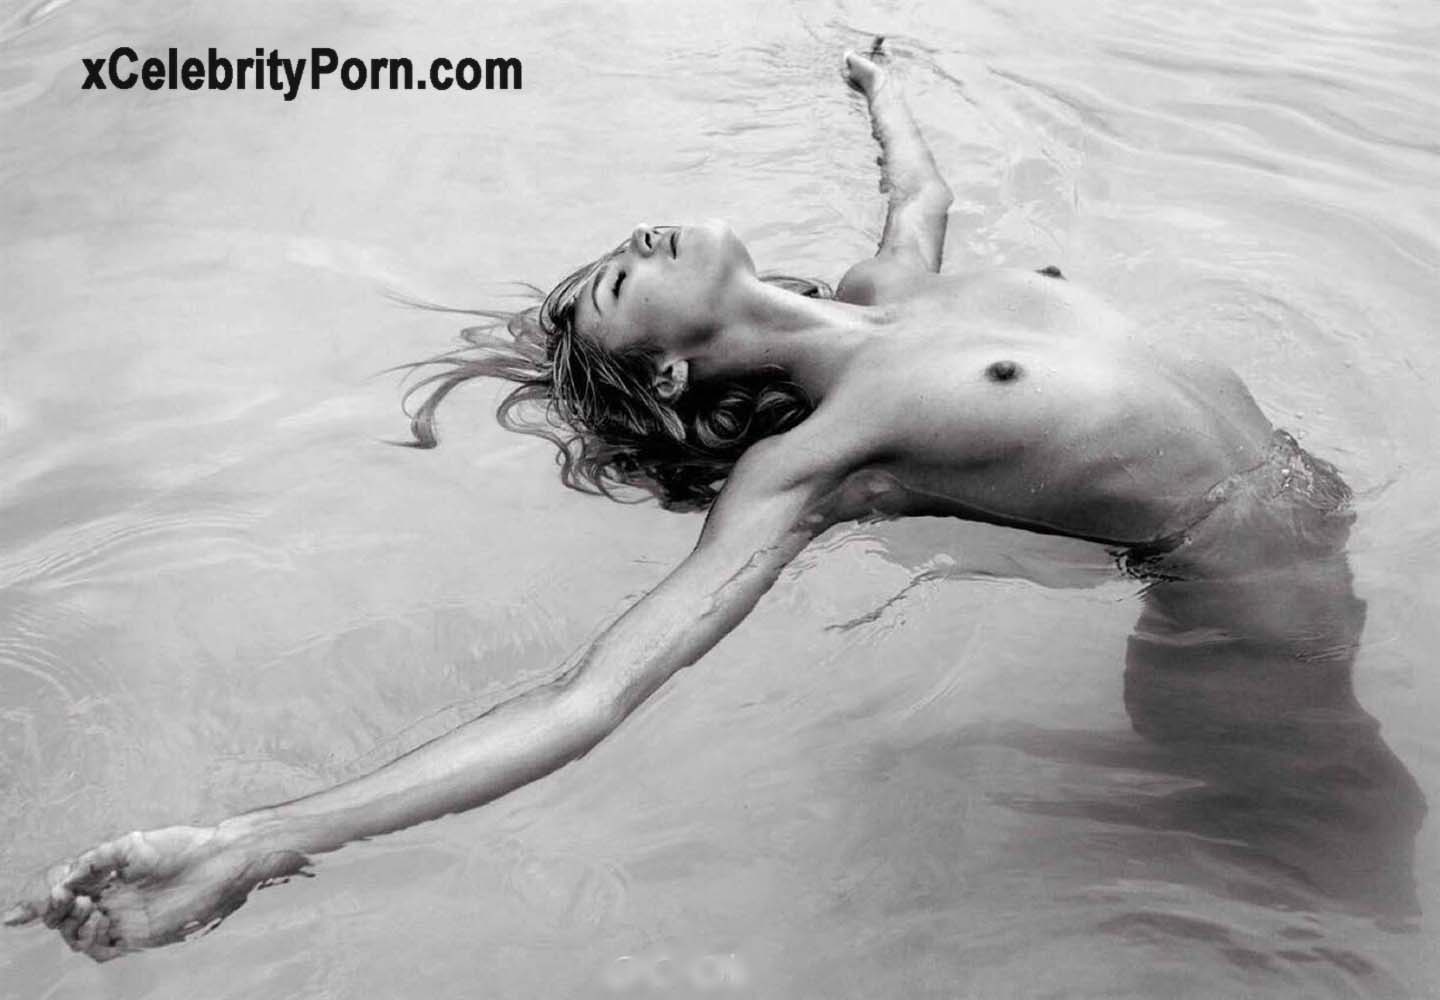 Candice Swanepoel Desnuda Fotos Filtradas -modelos-desnudas-descuidos-fotos-xxx-prohibidas-filtradas-teniendo-relaciones-sexuales (1)